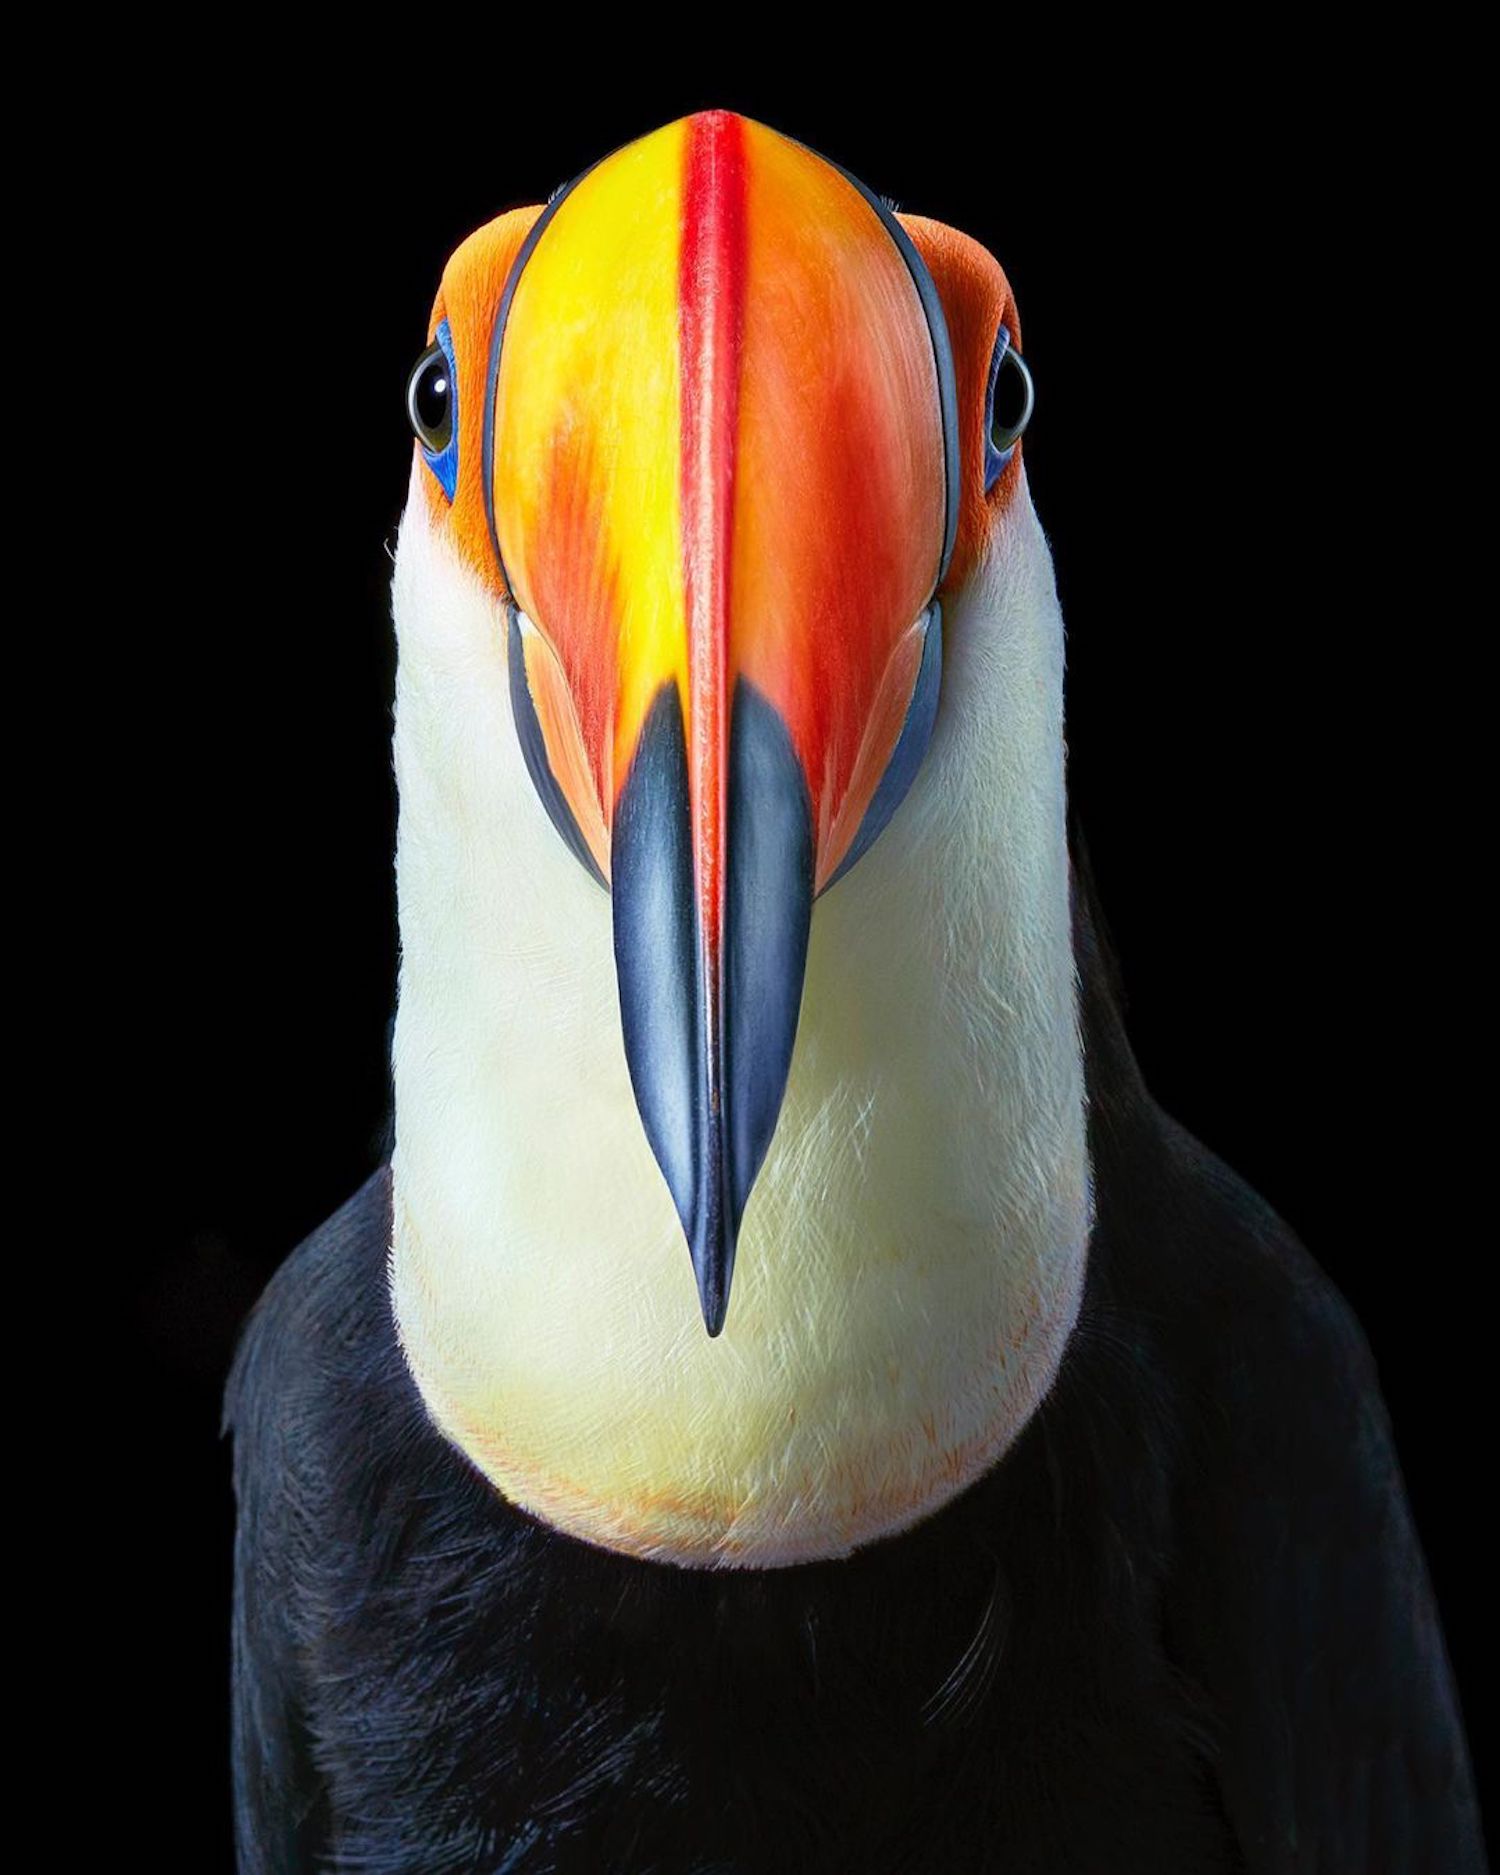 Le photographe Tim Flach capture des portraits saisissants d'oiseaux en voie de disparition